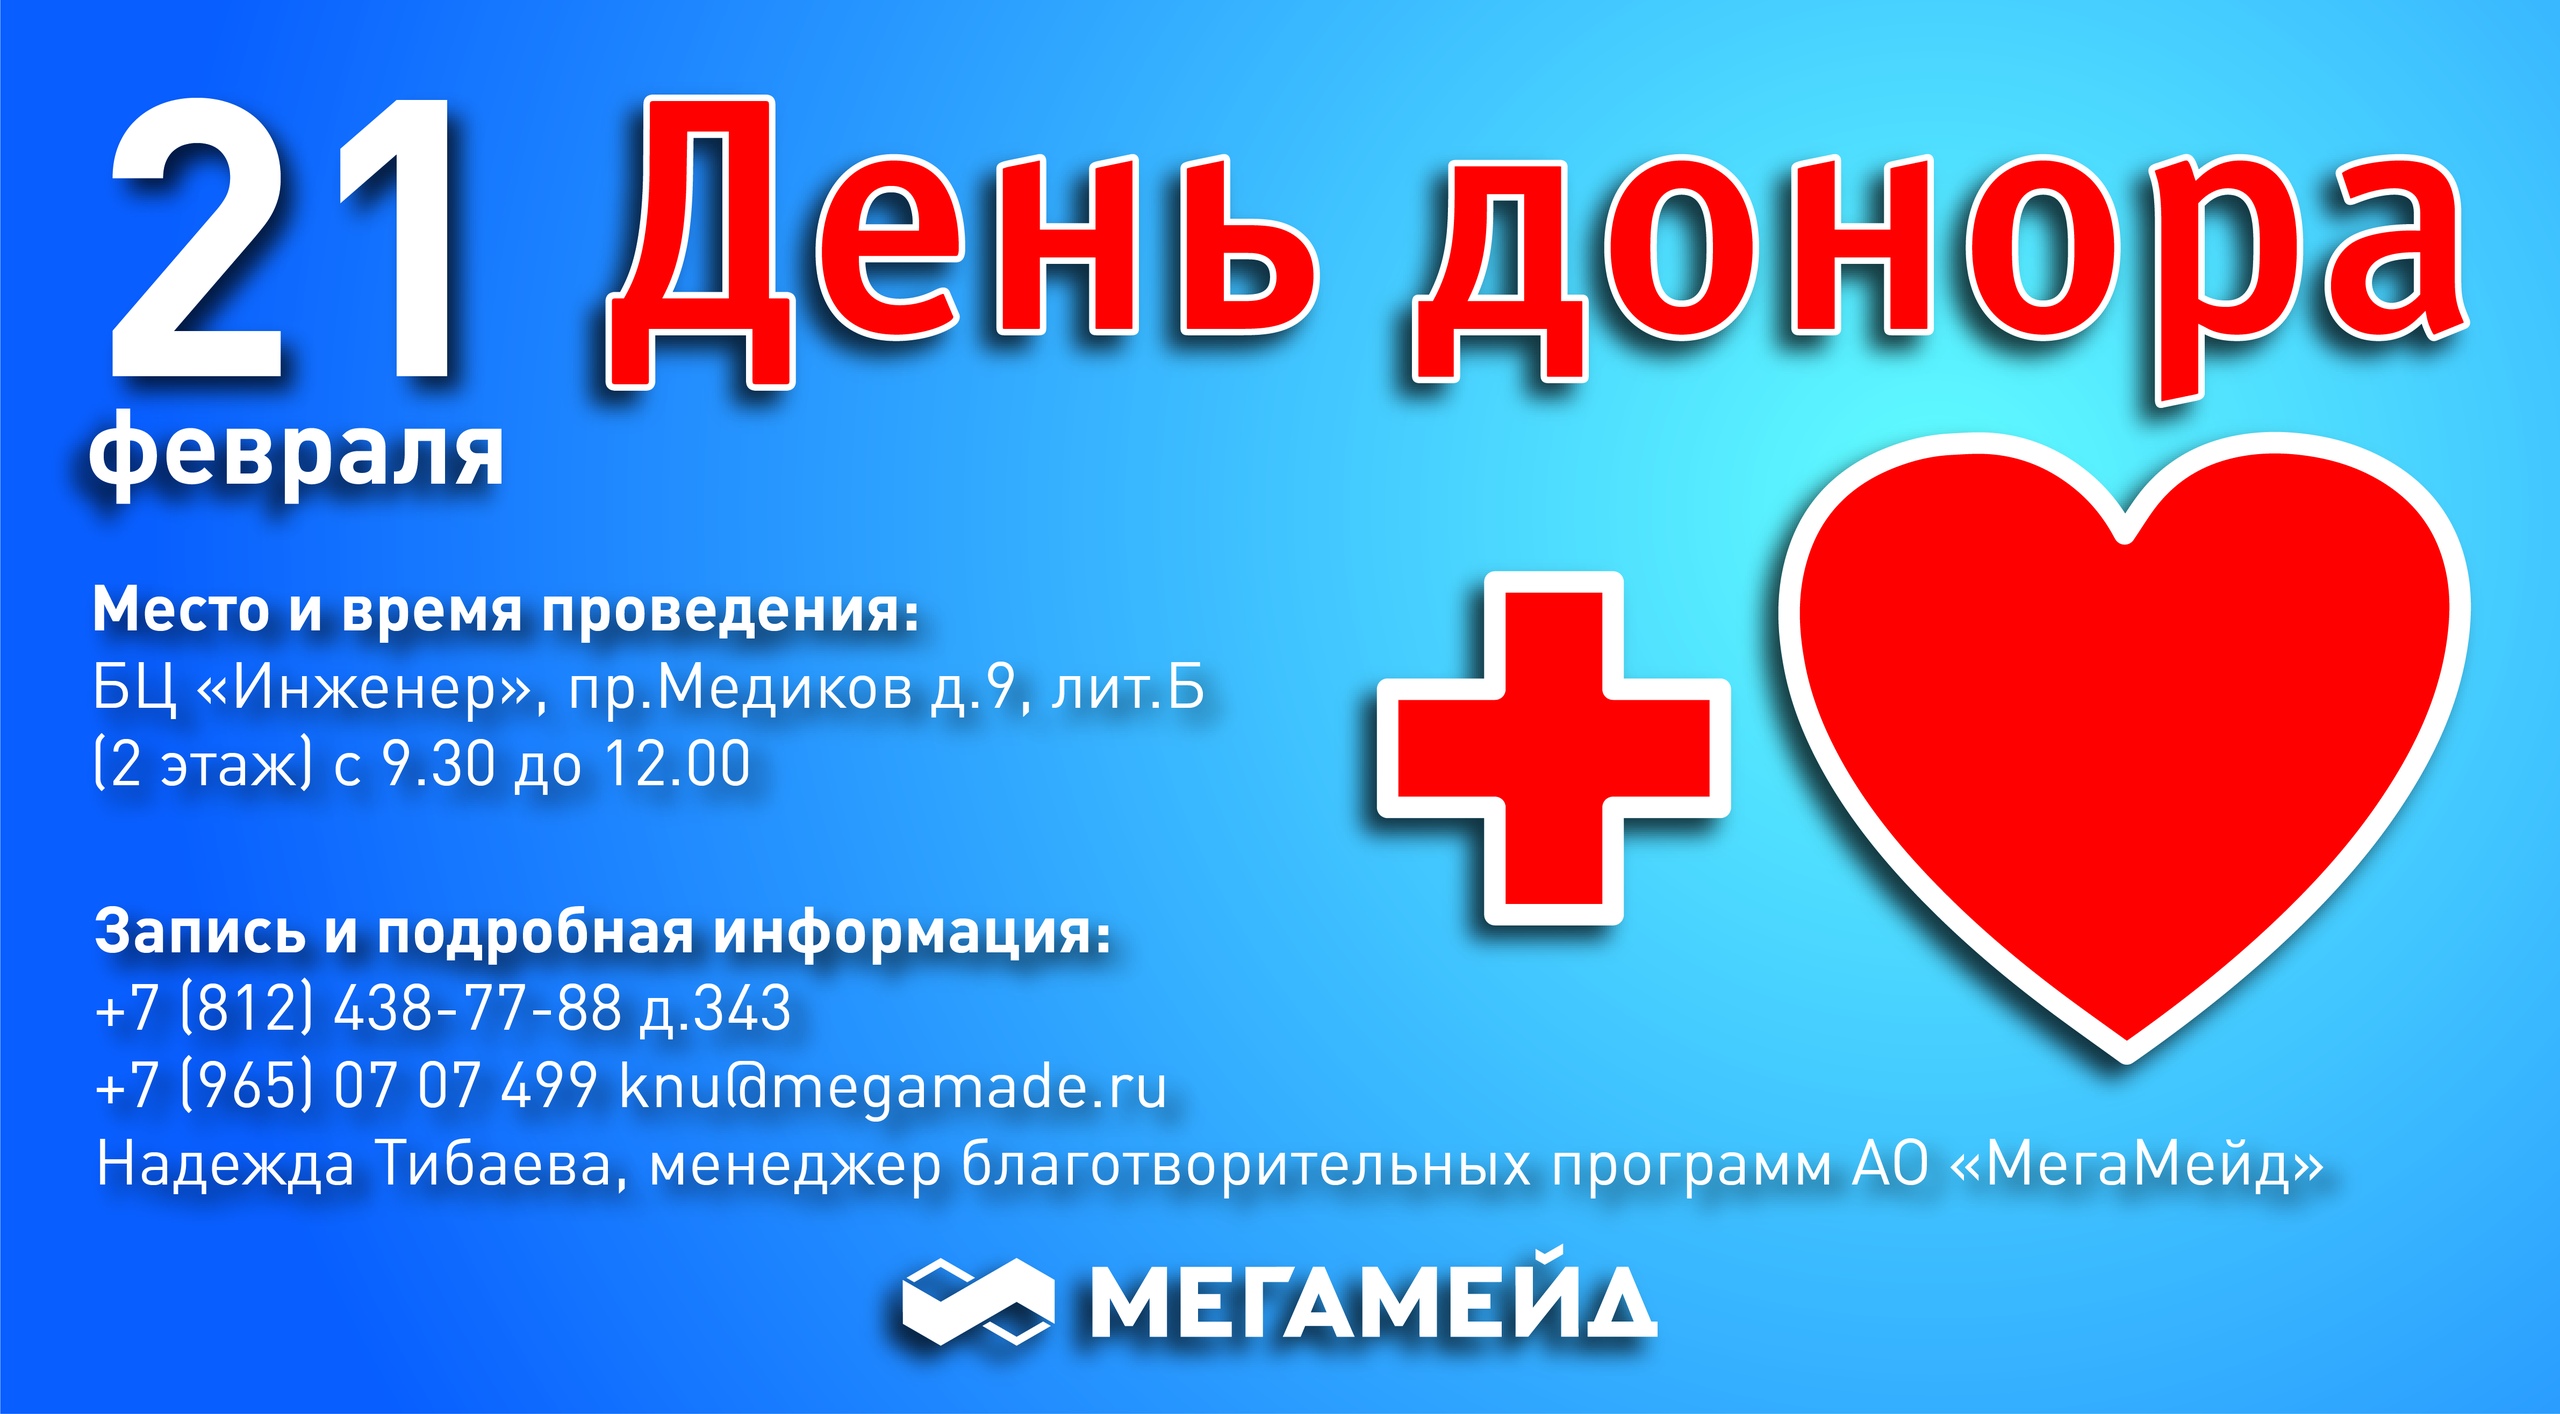 Донор 33 выездная. Всемирный день донора крови. Я донор 33. Медиков 9б. День донора Республика Алтай.